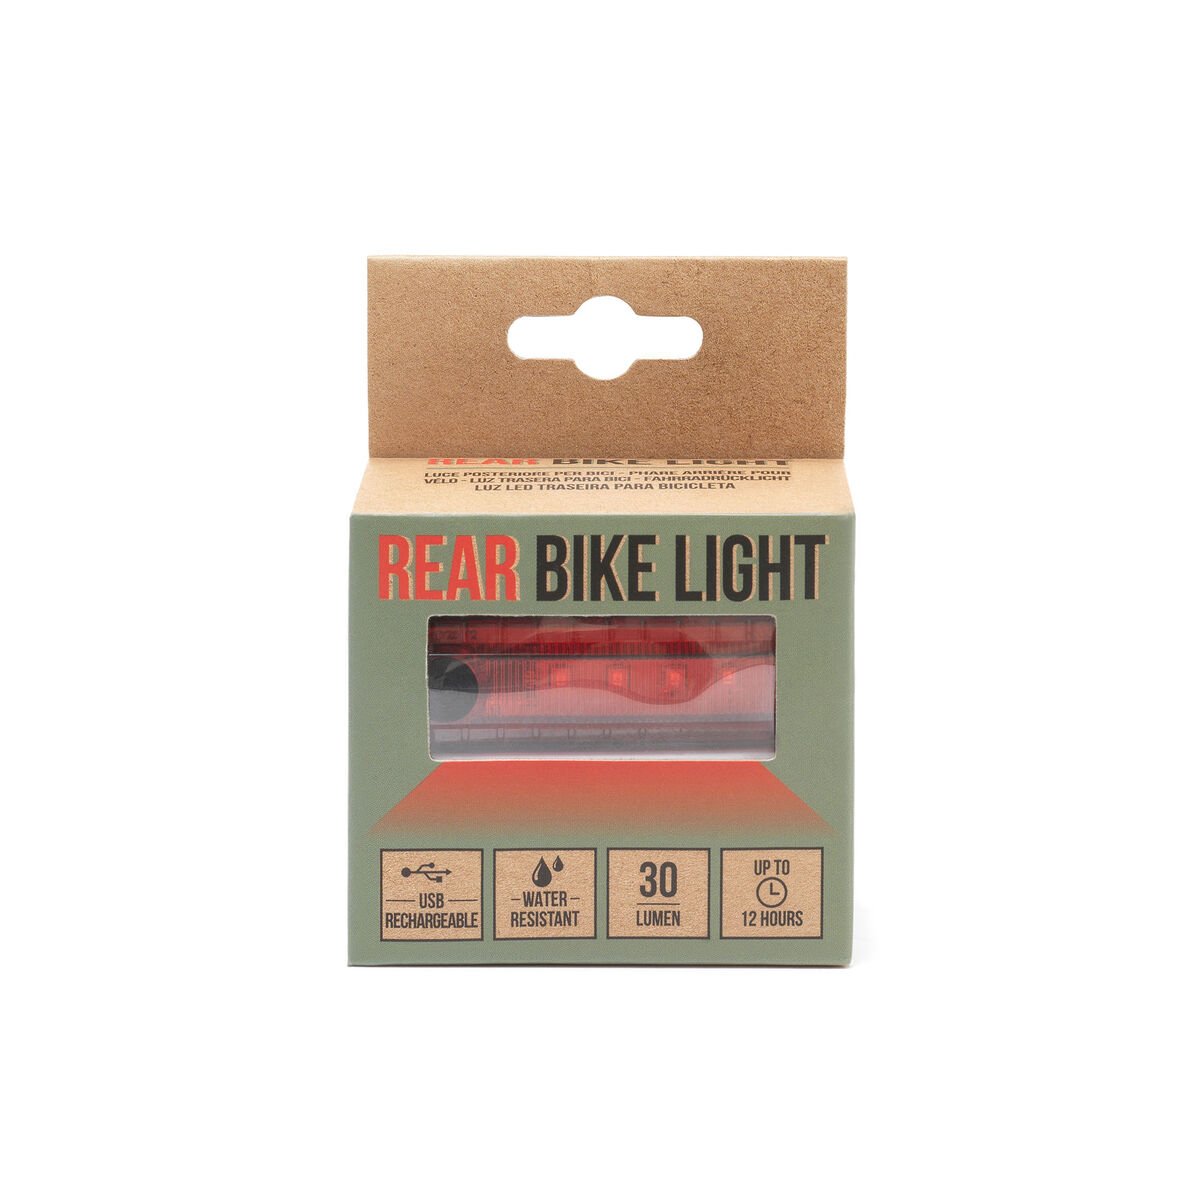 Rear Bike Light, , zoo